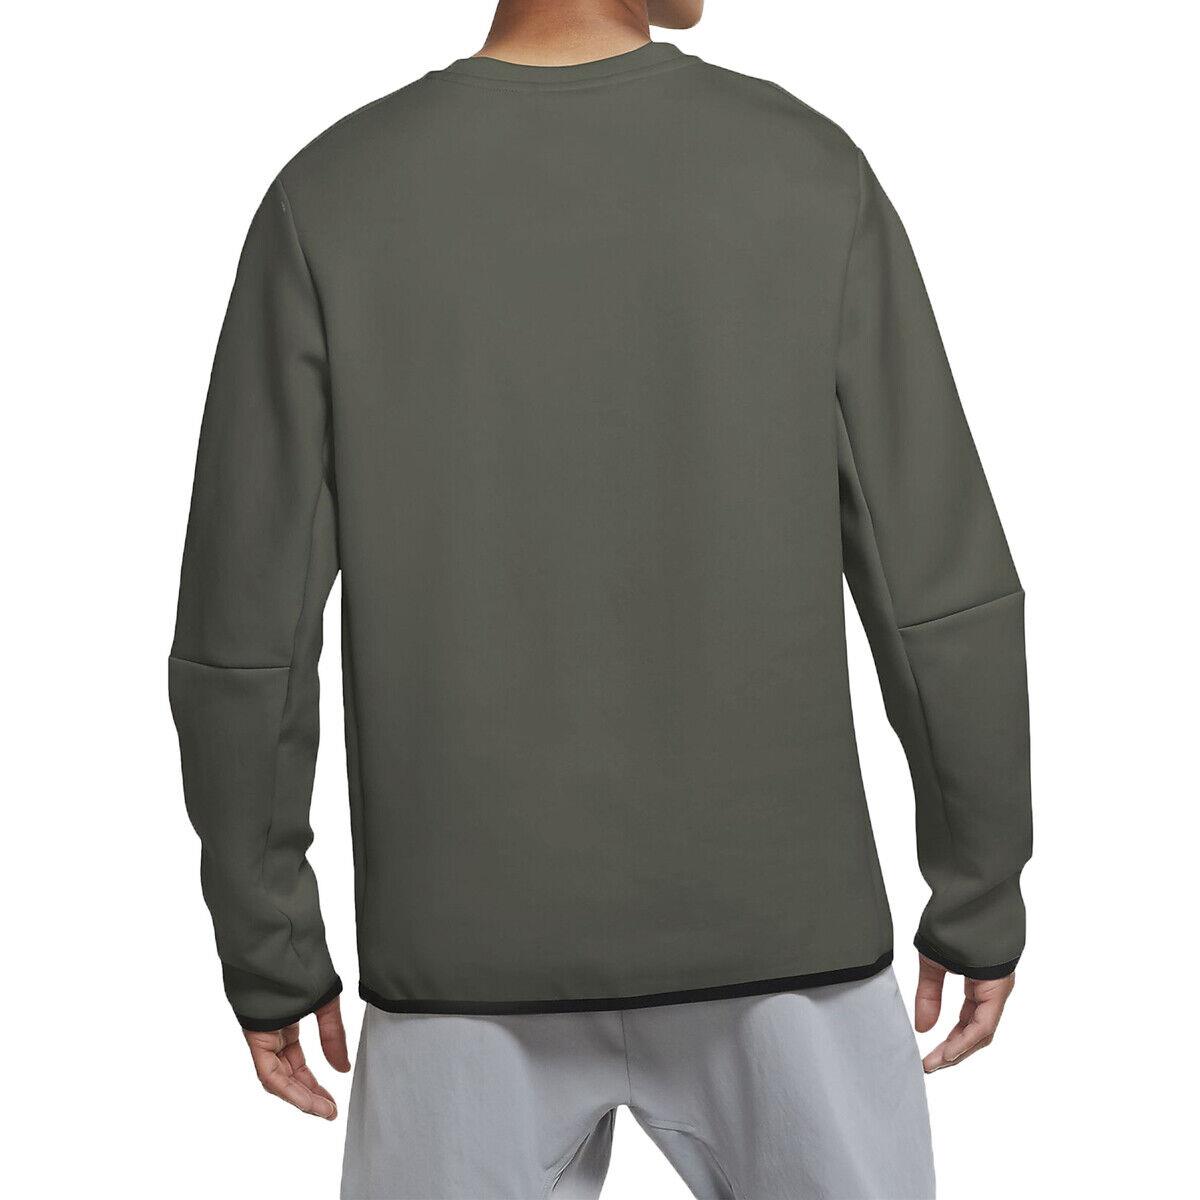 Nike Sportswear Tech Fleece Crewneck Sweatshir Mens Style : Cu4505